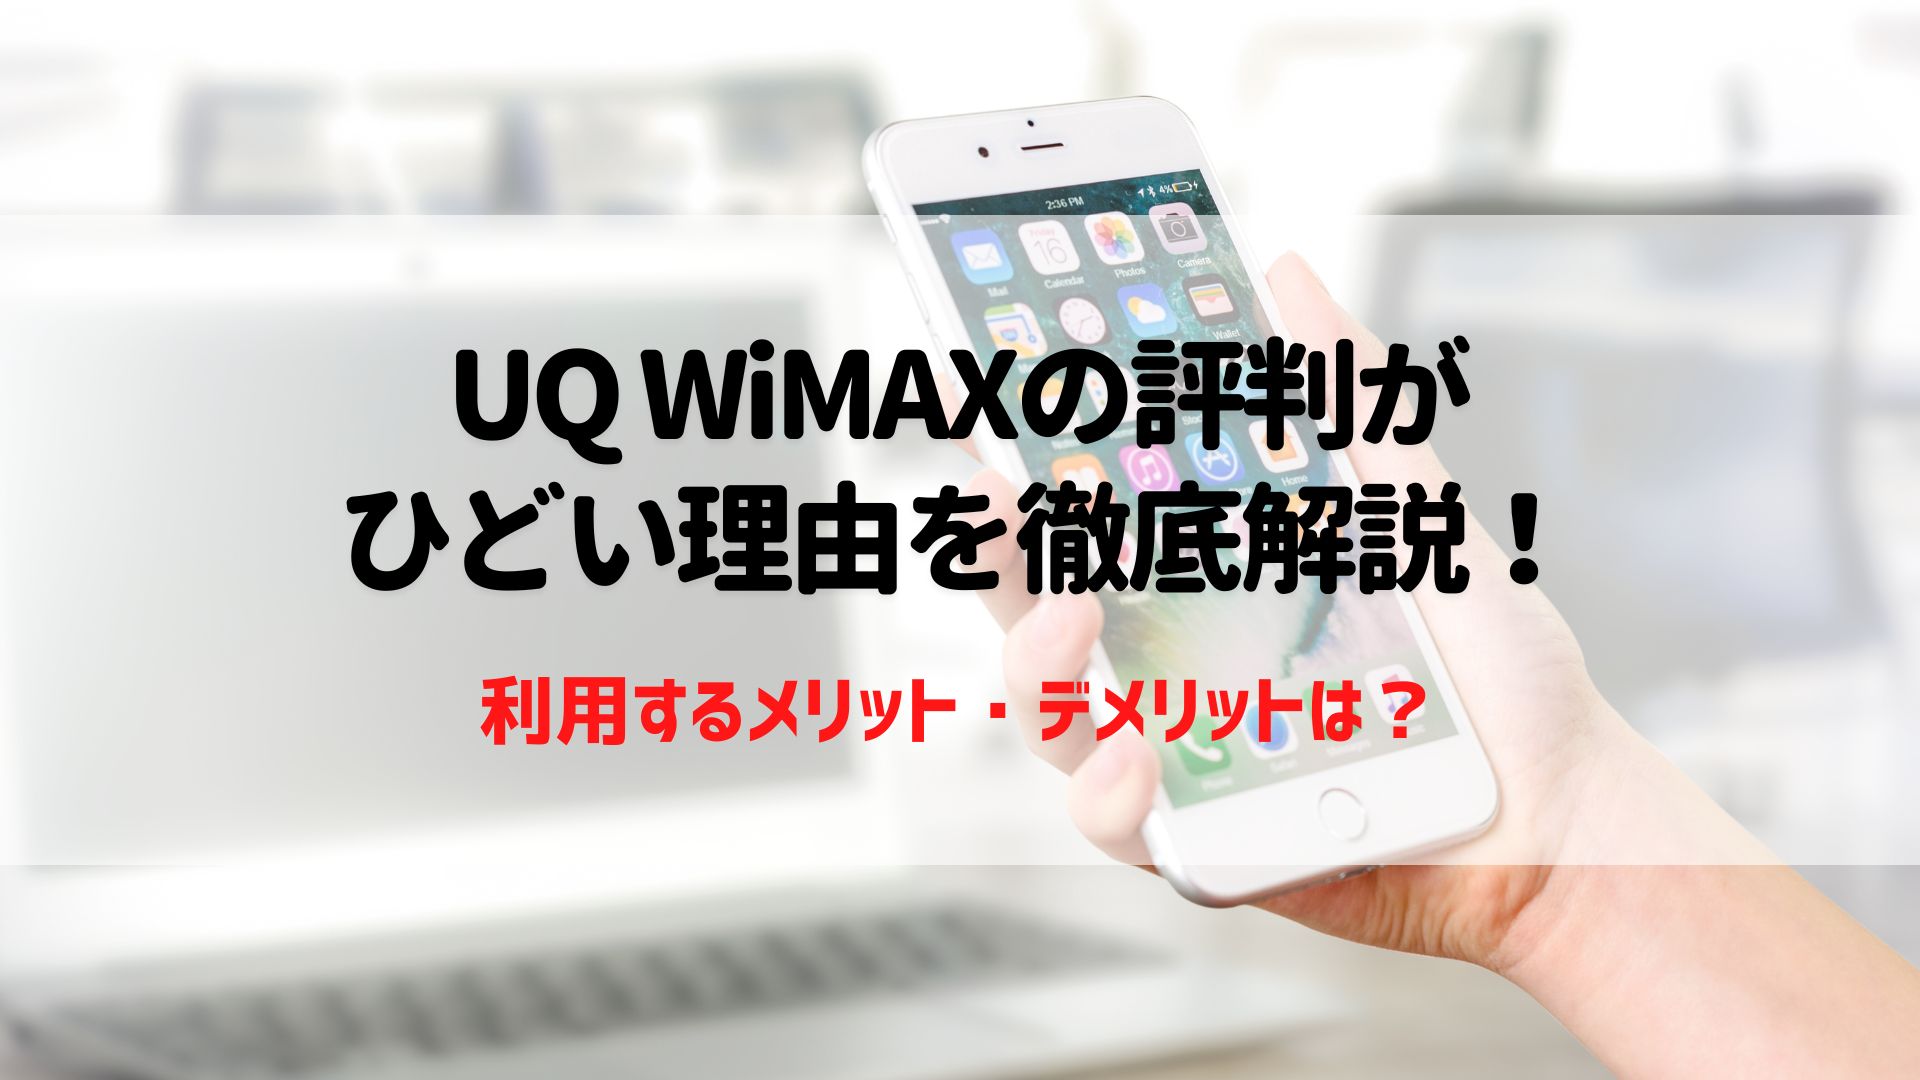 UQ WiMAXの評判がひどい理由を徹底解説！メリット・デメリットや解約